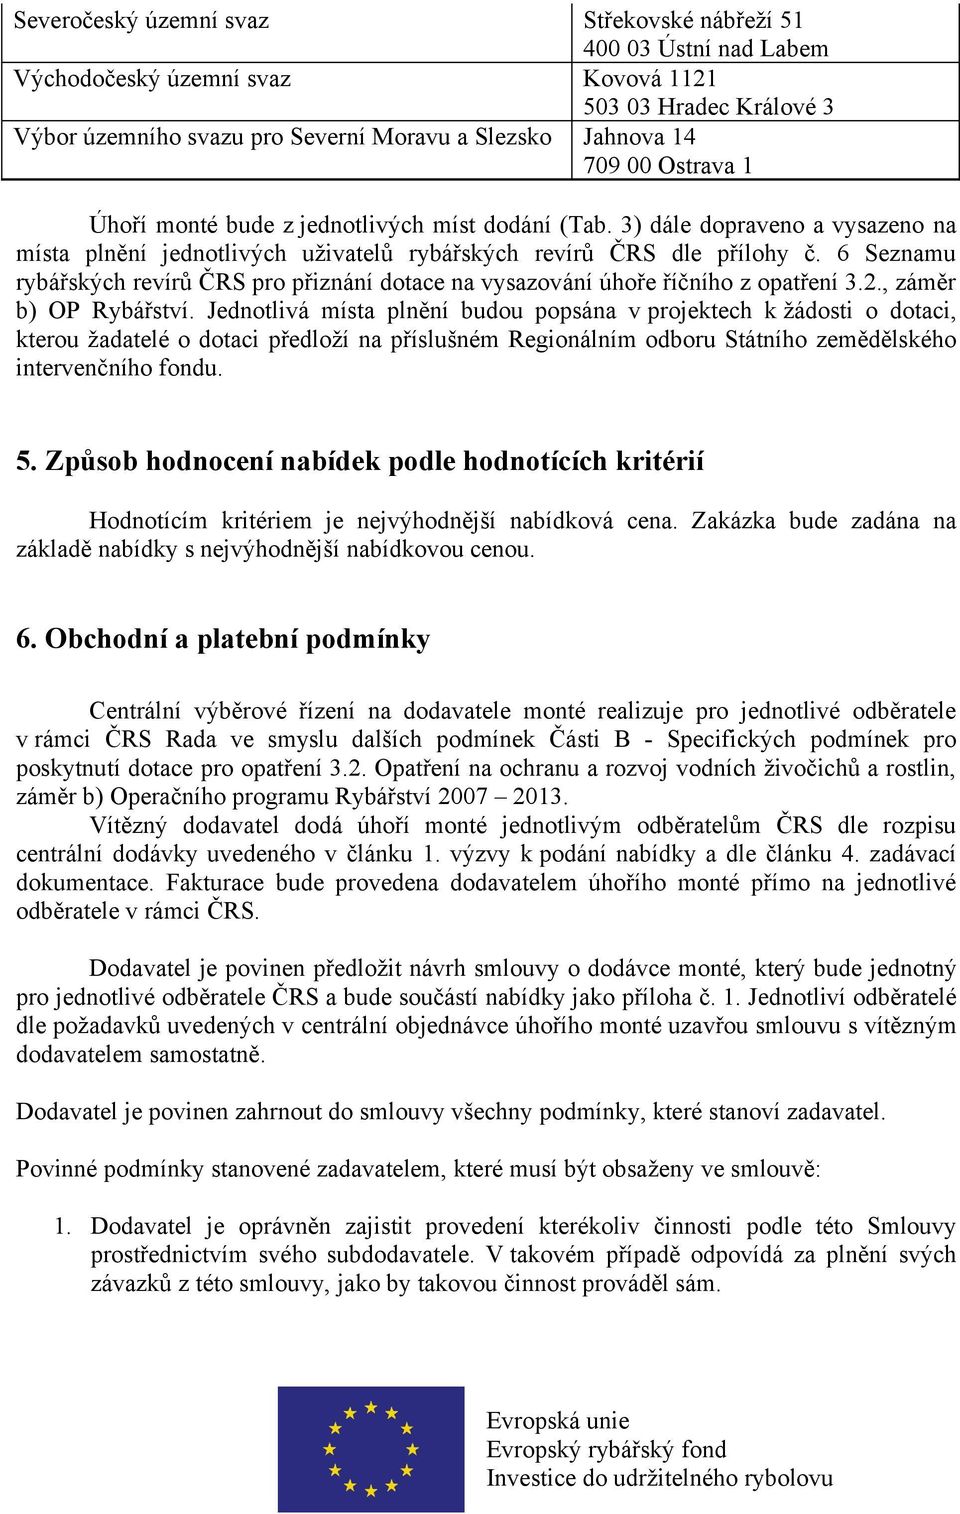 6 Seznamu rybářských revírů ČRS pro přiznání dotace na vysazování úhoře říčního z opatření 3.2., záměr b) OP Rybářství.